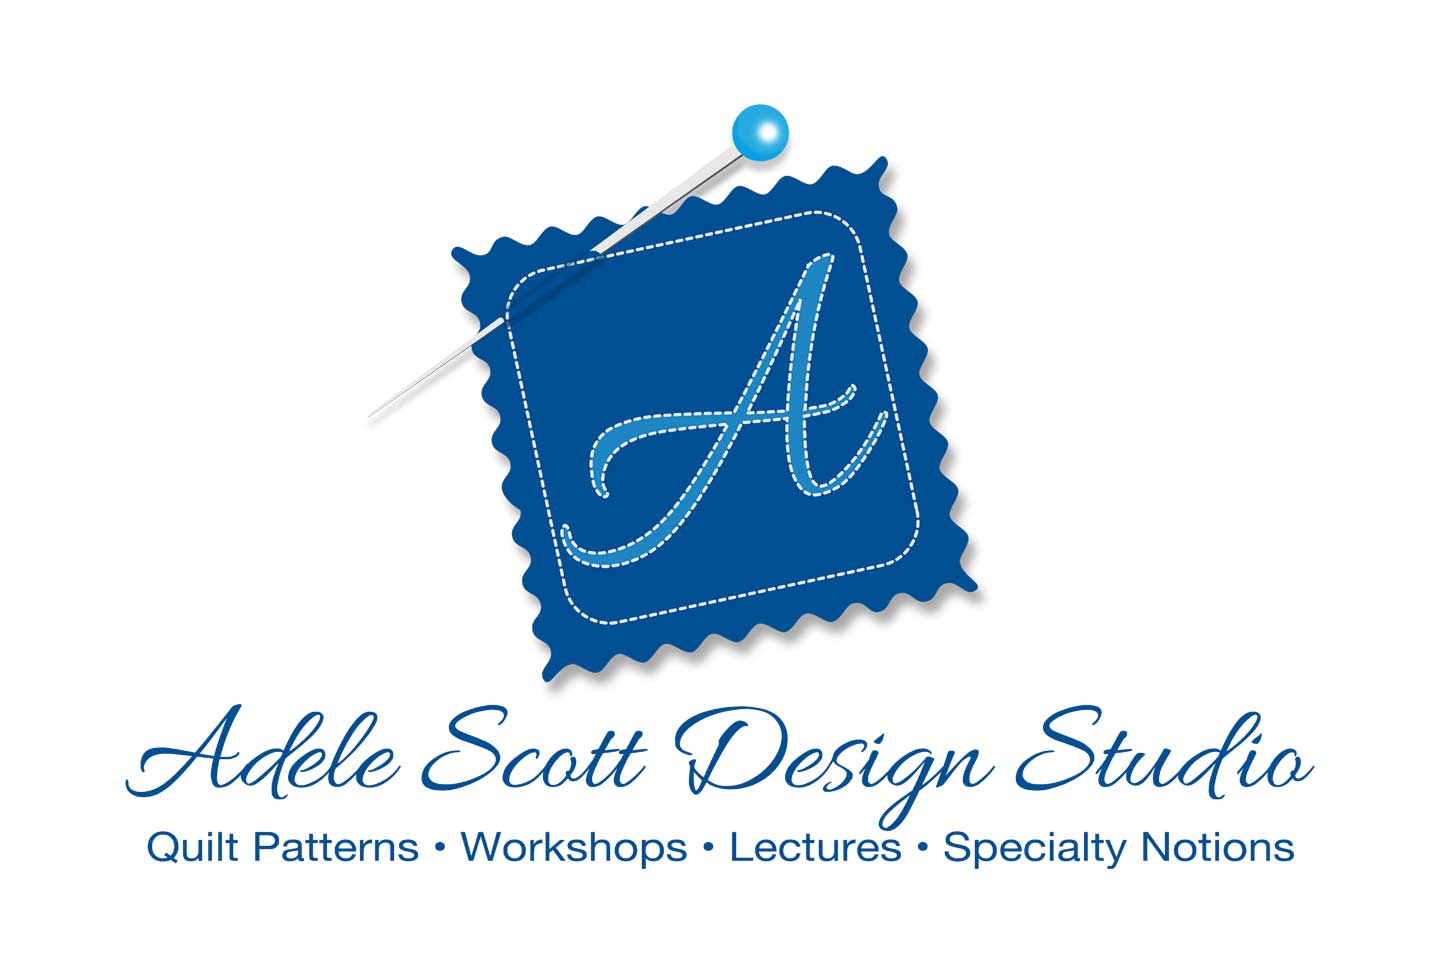 Adele Scott Design Studio